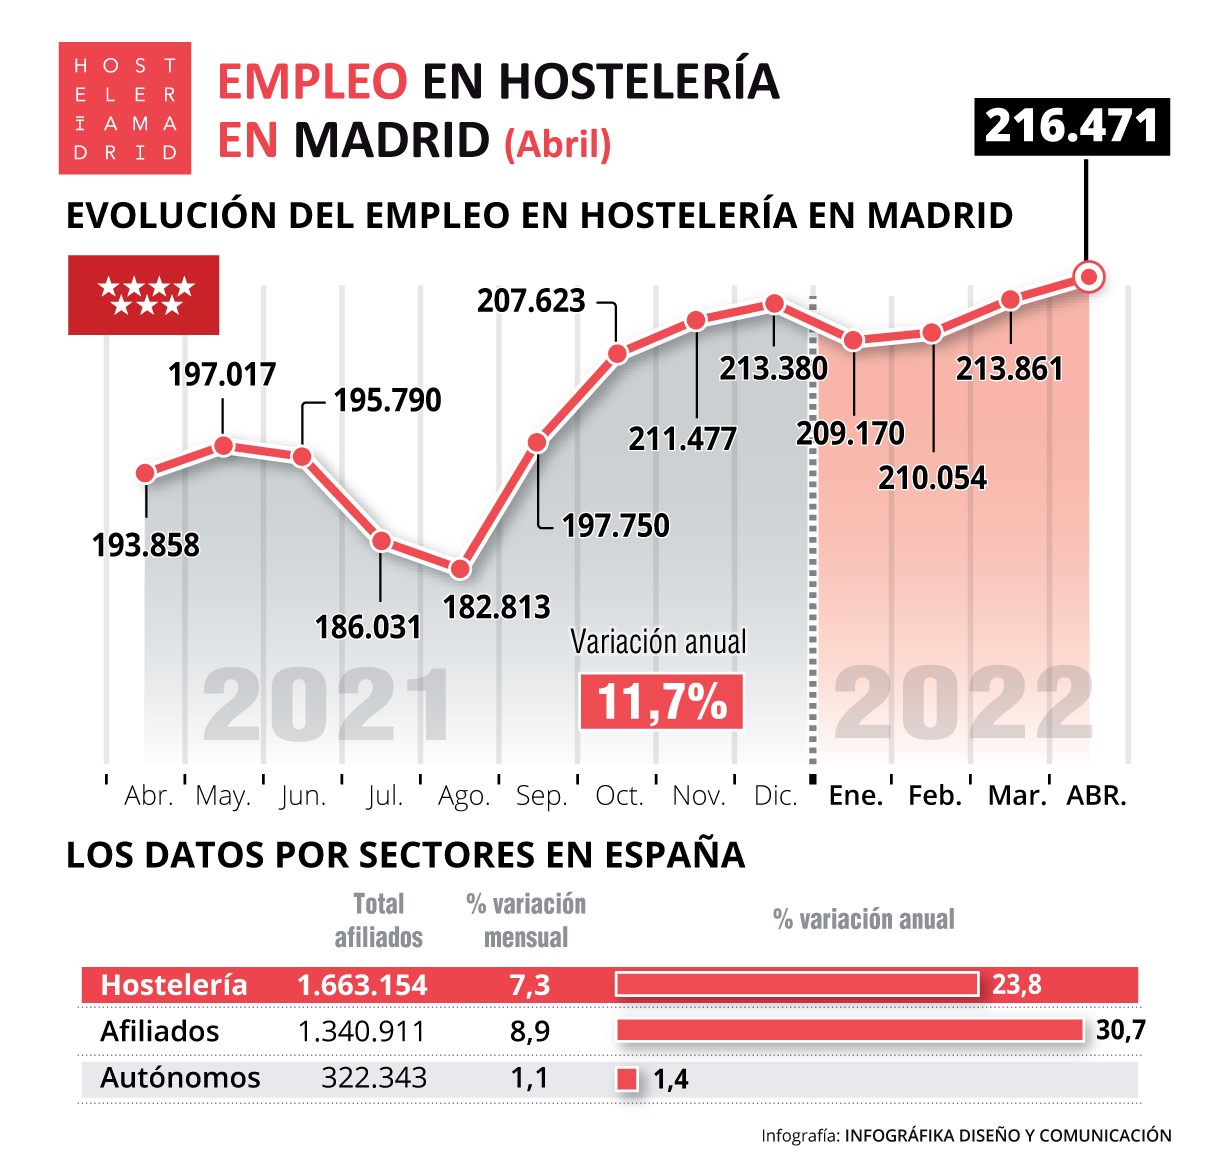 El empleo hostelero subió un 11,7% en Madrid con respecto a abril de 2021 - La Viña